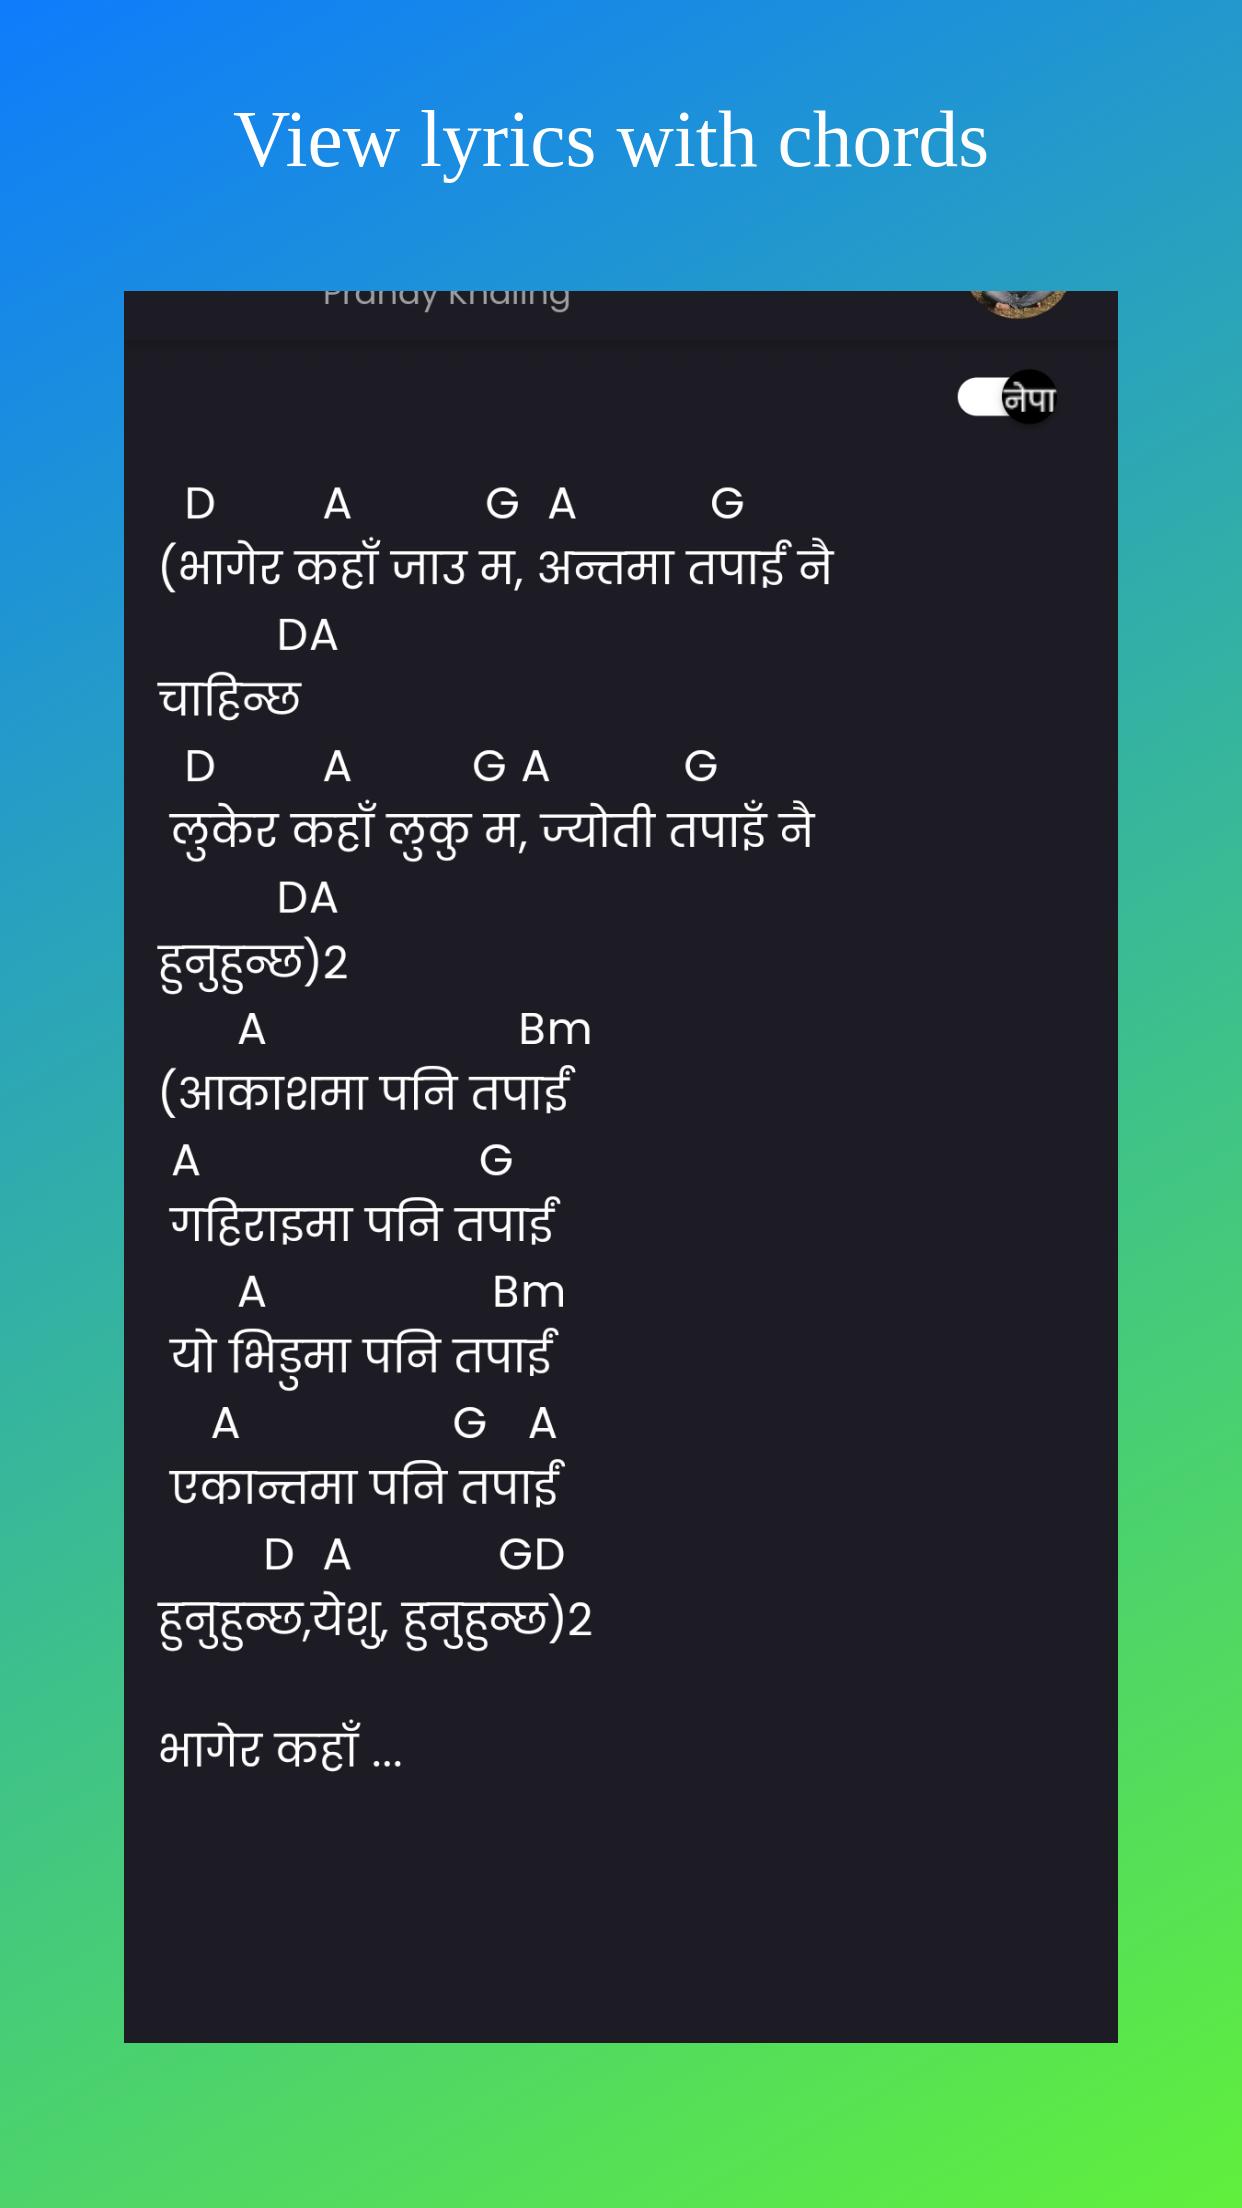 Prøv det barriere udstrømning Nepali Christian Lyrics & Chords for Android - APK Download